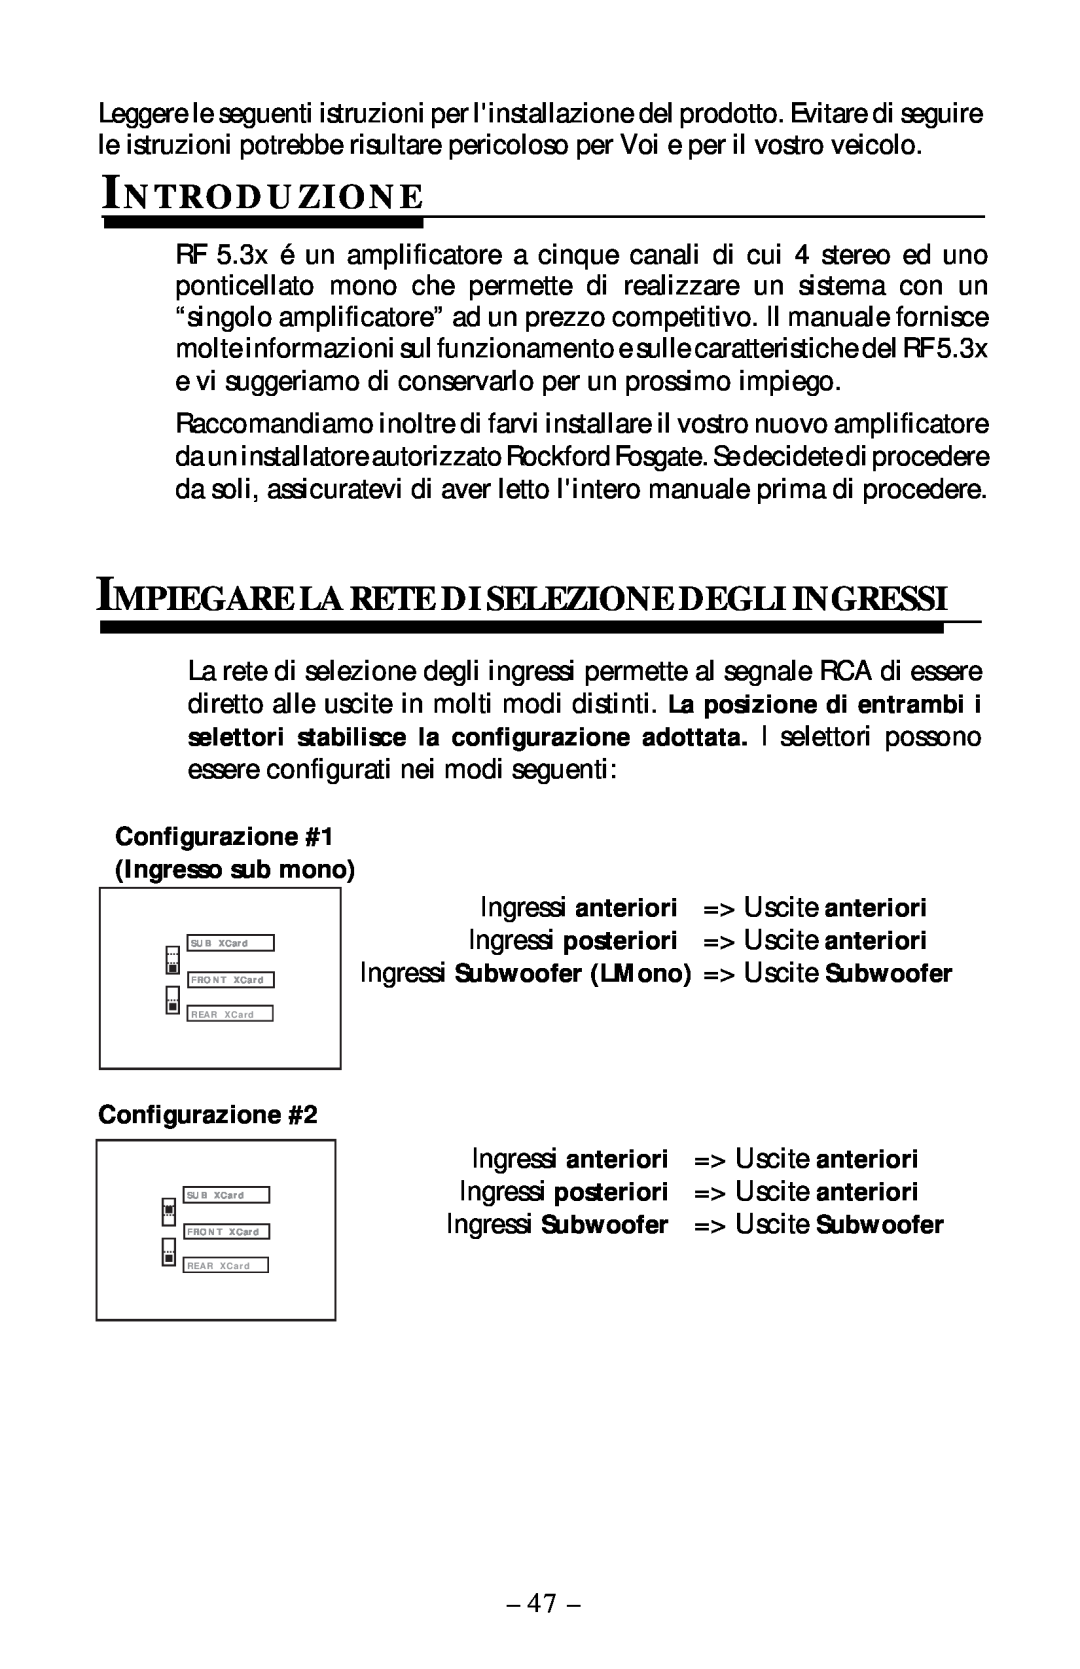 Rockford Fosgate 5.3x manual Introduzione, Impiegare La Rete Di Selezione Degli Ingressi, Configurazione #2 